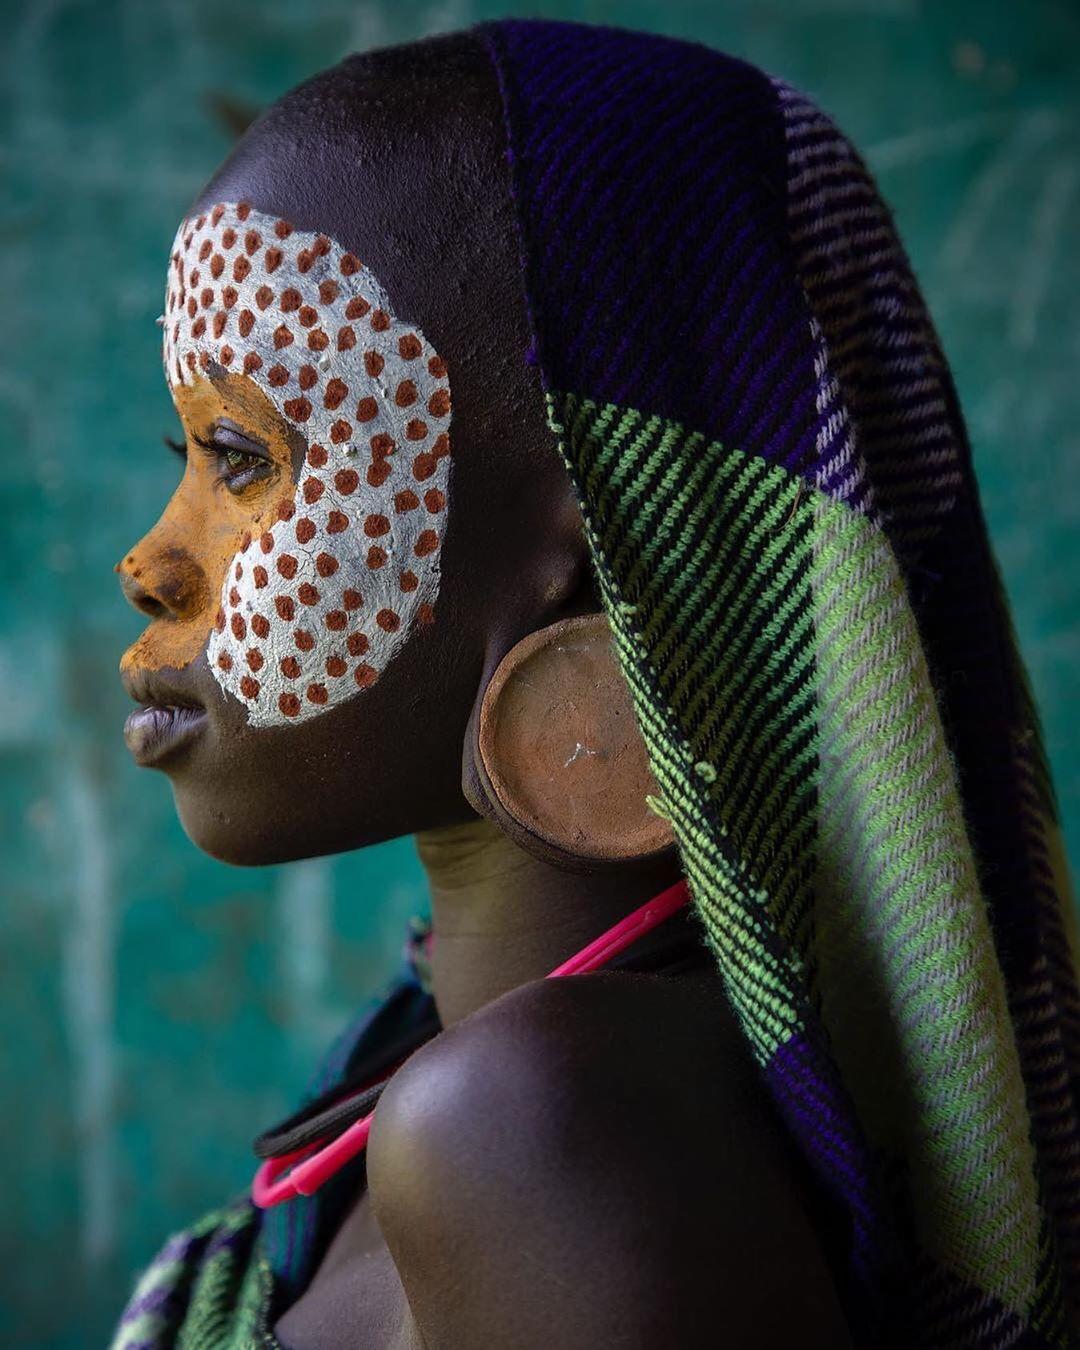  埃塞俄比亚奥莫河谷的女孩，来自摄影师Derrick Bryson。 